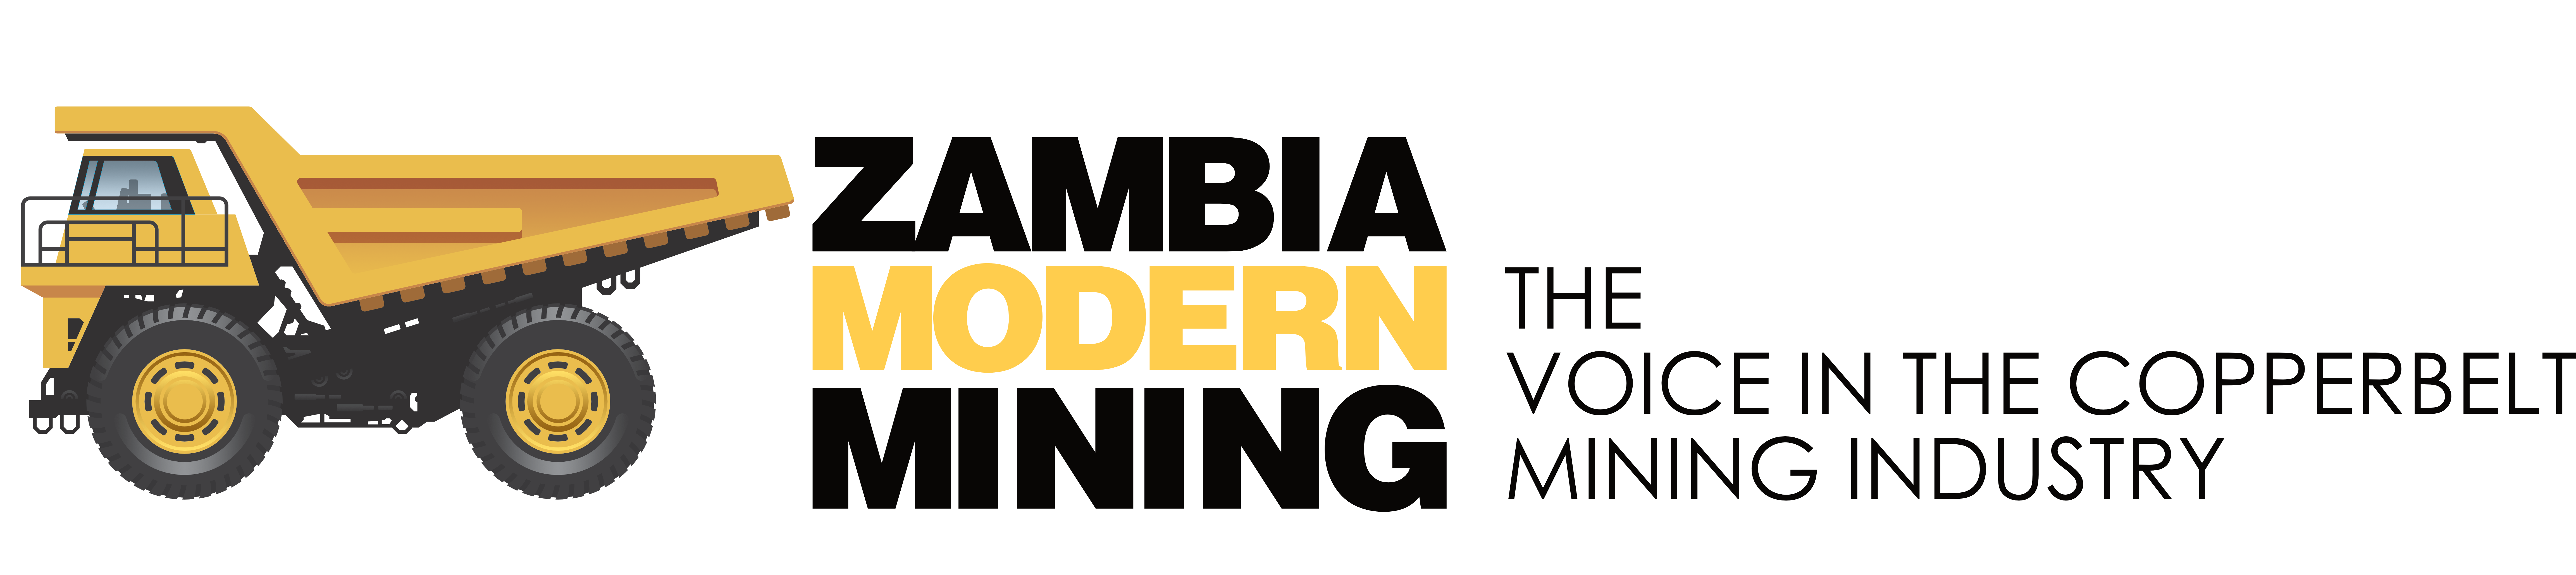 Zambia Modern Mining